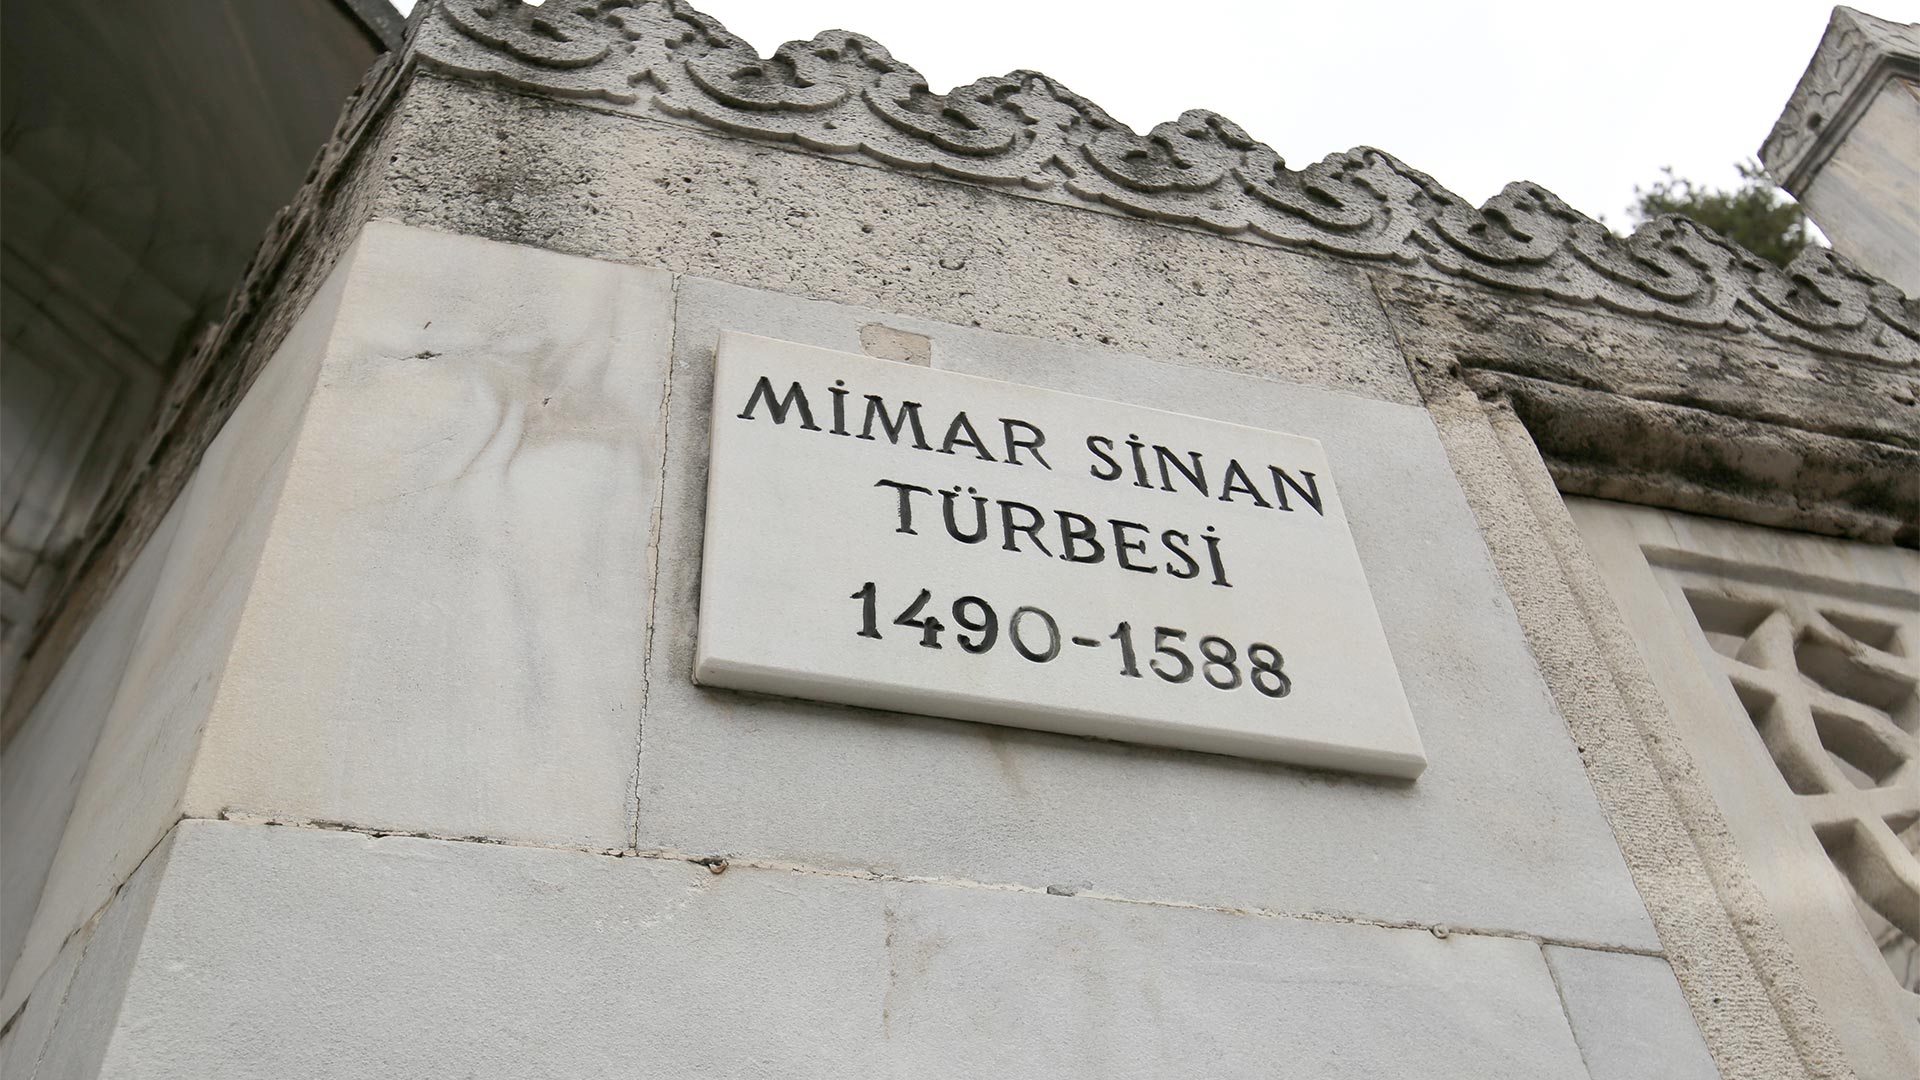 Mimar Sinan Tomb